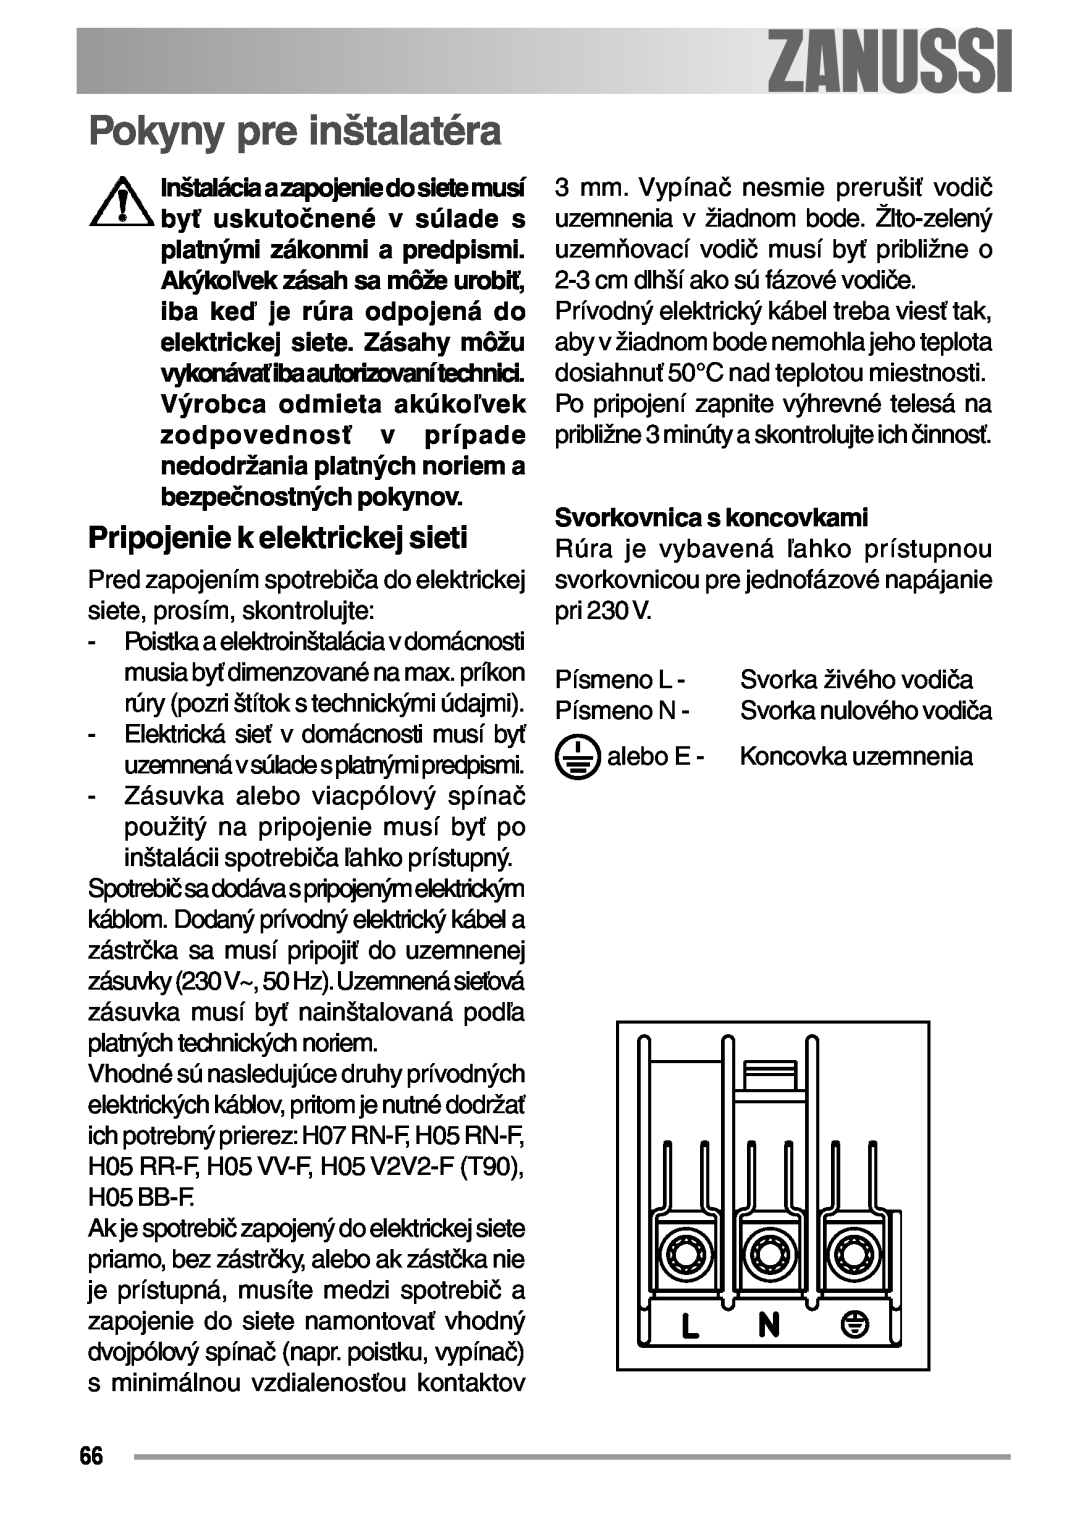 Zanussi ZOB 594 manual Pokyny pre inštalatéra, Pripojenie k elektrickej sieti, Svorkovnica s koncovkami, electrolux 